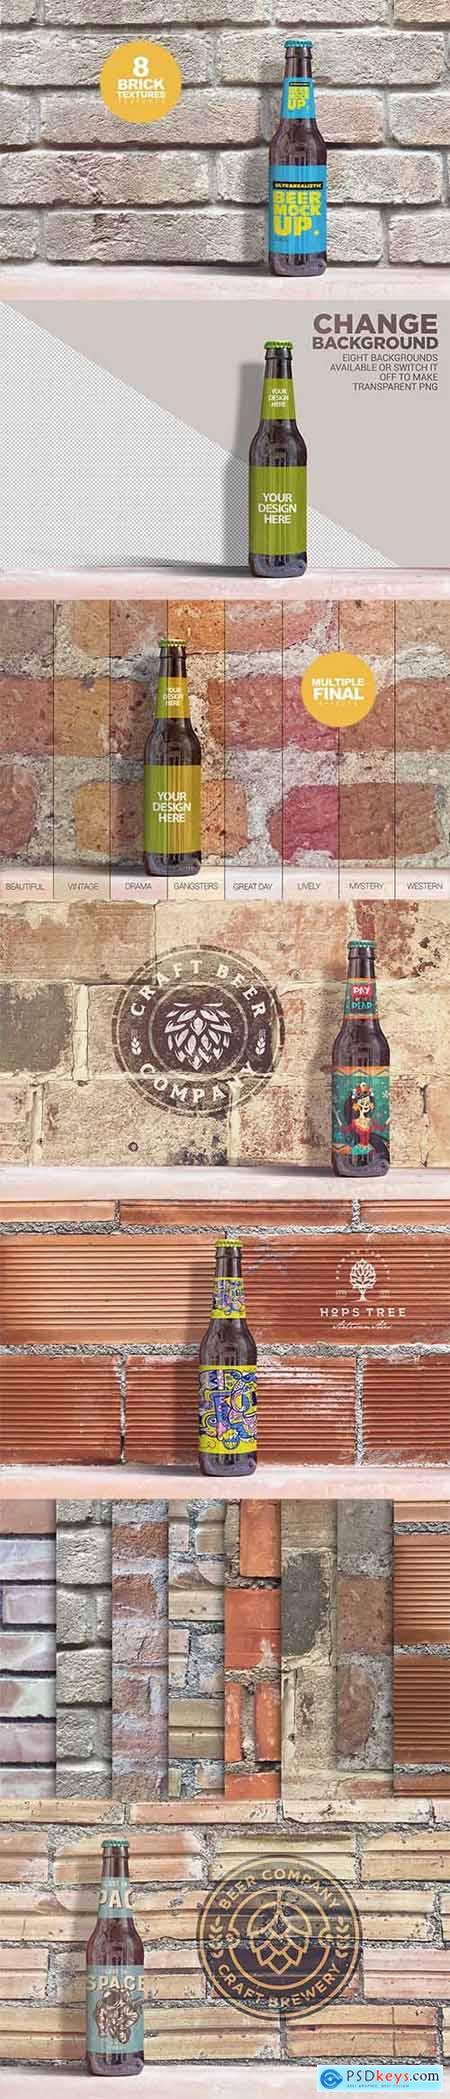 Brick Backgrounds Beer Mockup